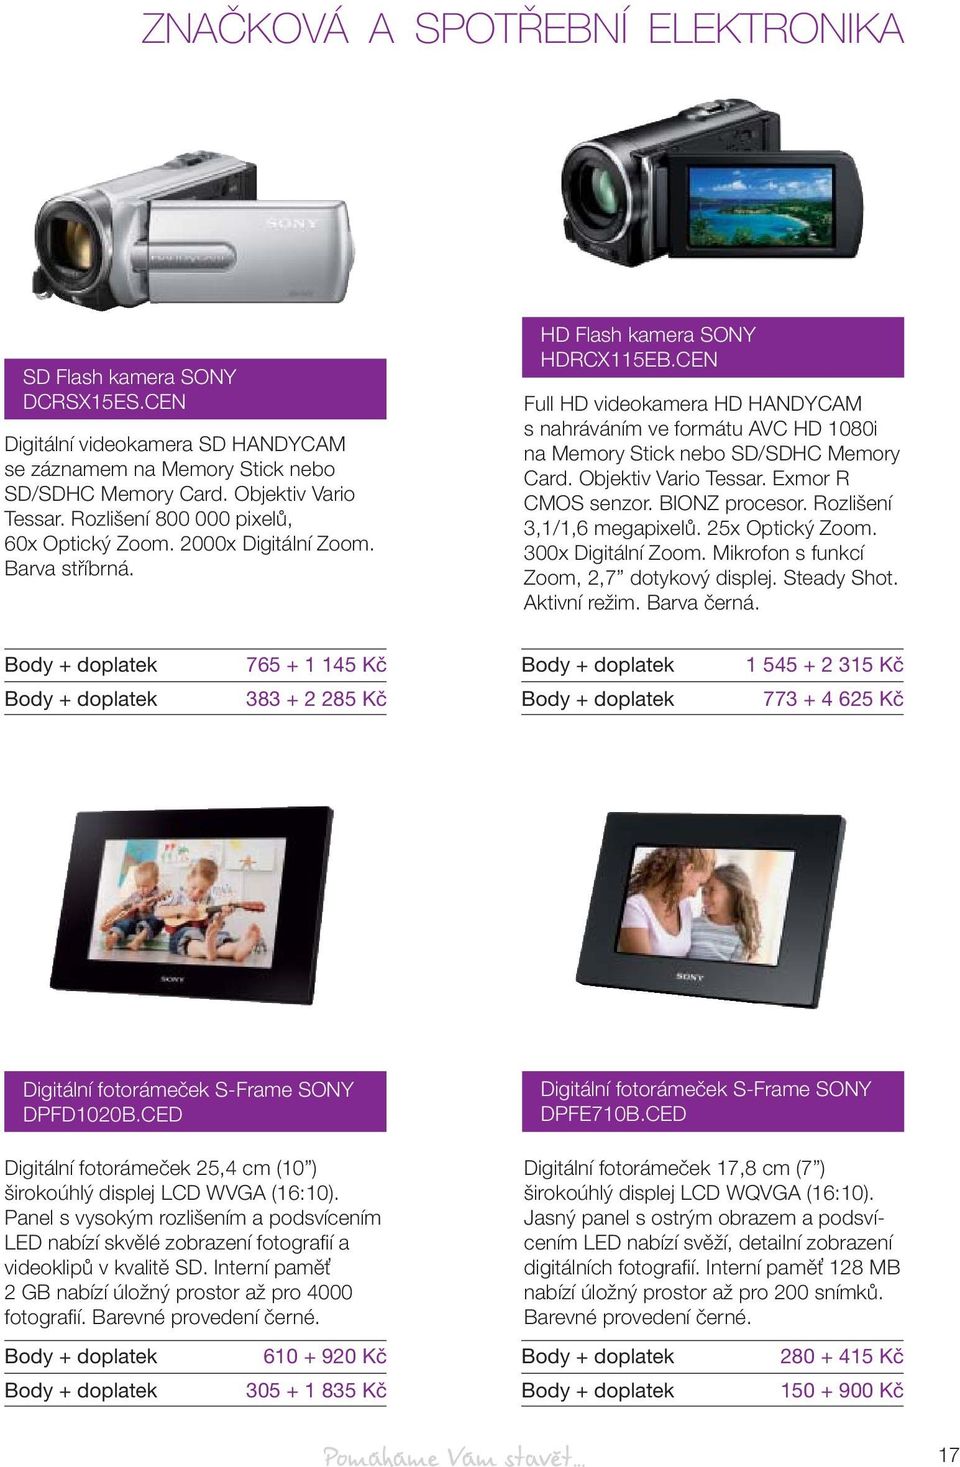 CEN Full HD videokamera HD HANDYCAM s nahráváním ve formátu AVC HD 1080i na Memory Stick nebo SD/SDHC Memory Card. Objektiv Vario Tessar. Exmor R CMOS senzor. BIONZ procesor.